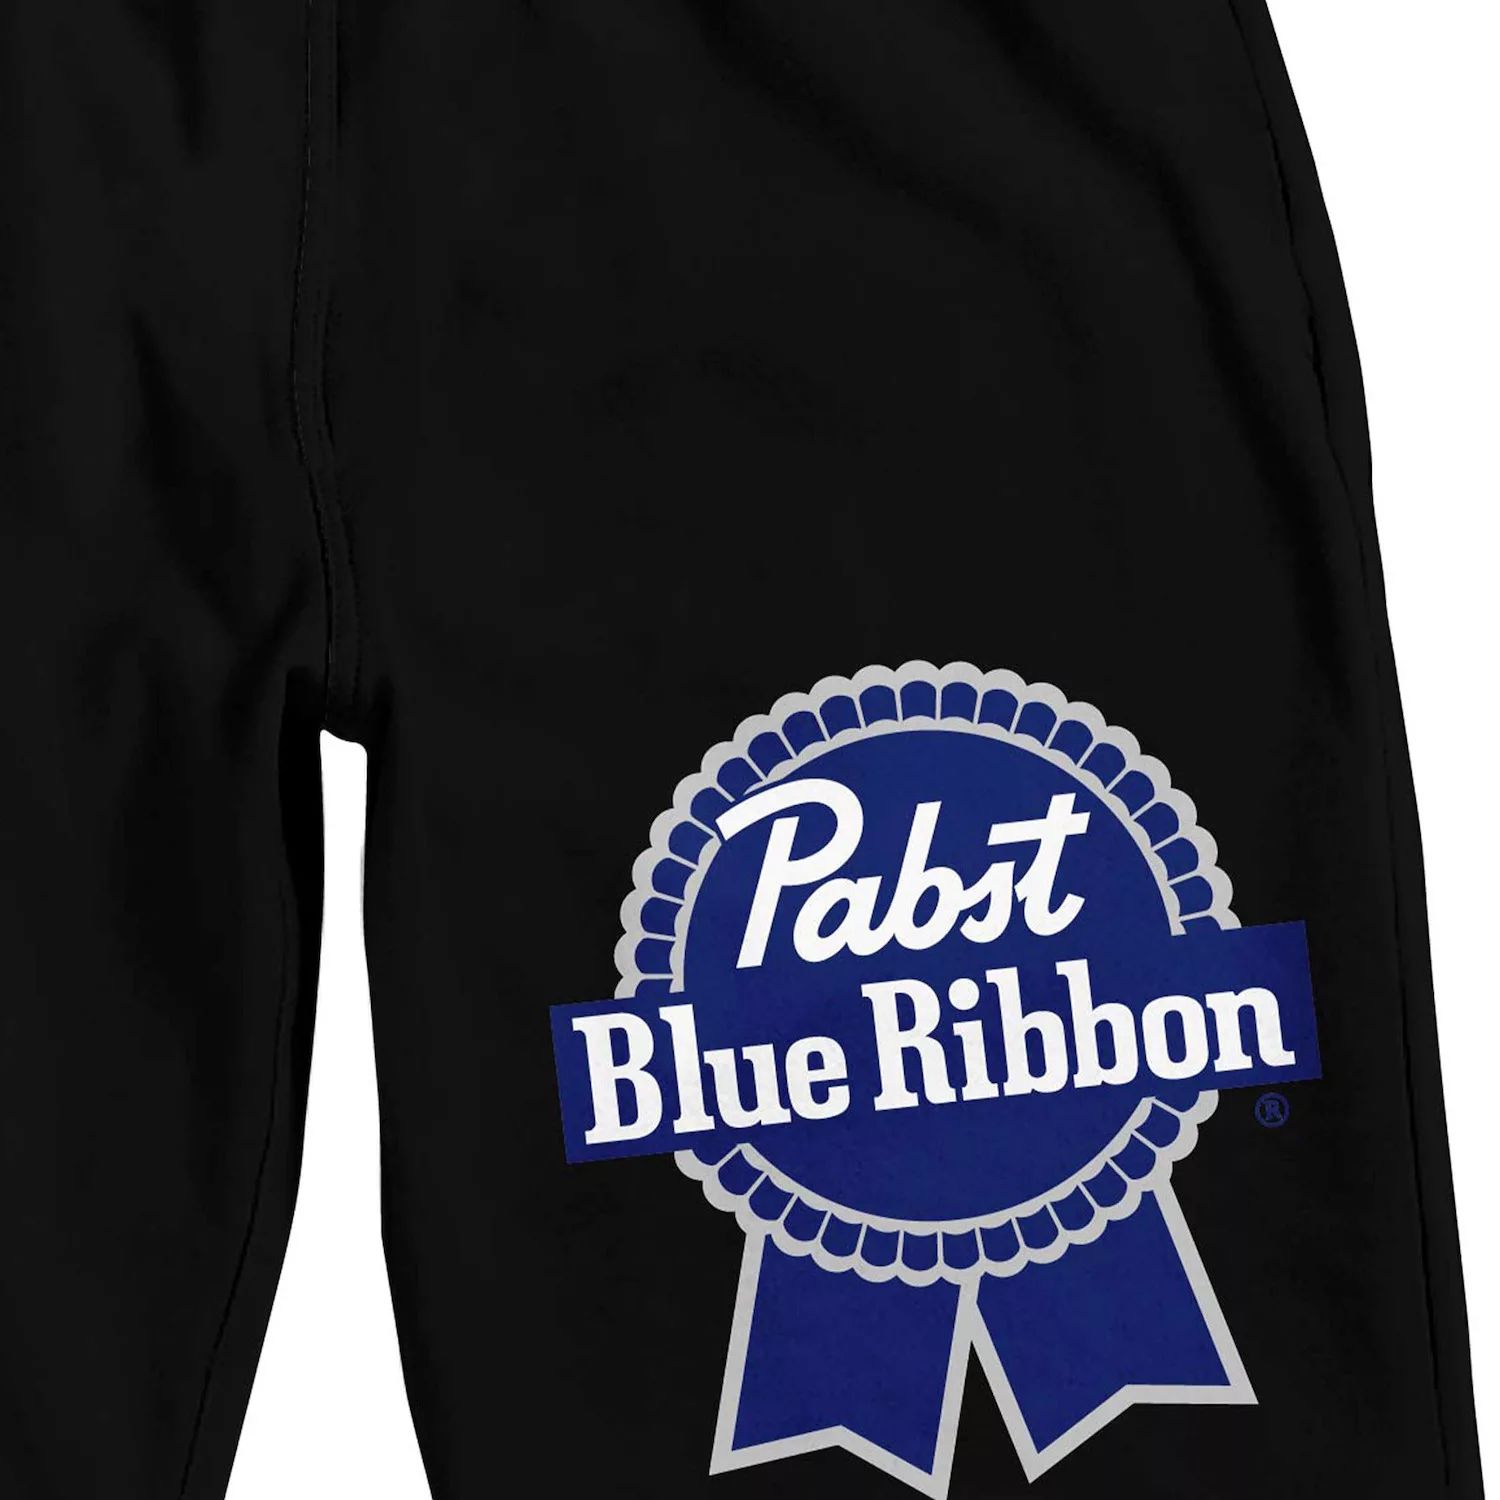 Мужские шорты для сна Pabst с синей лентой Licensed Character фотографии